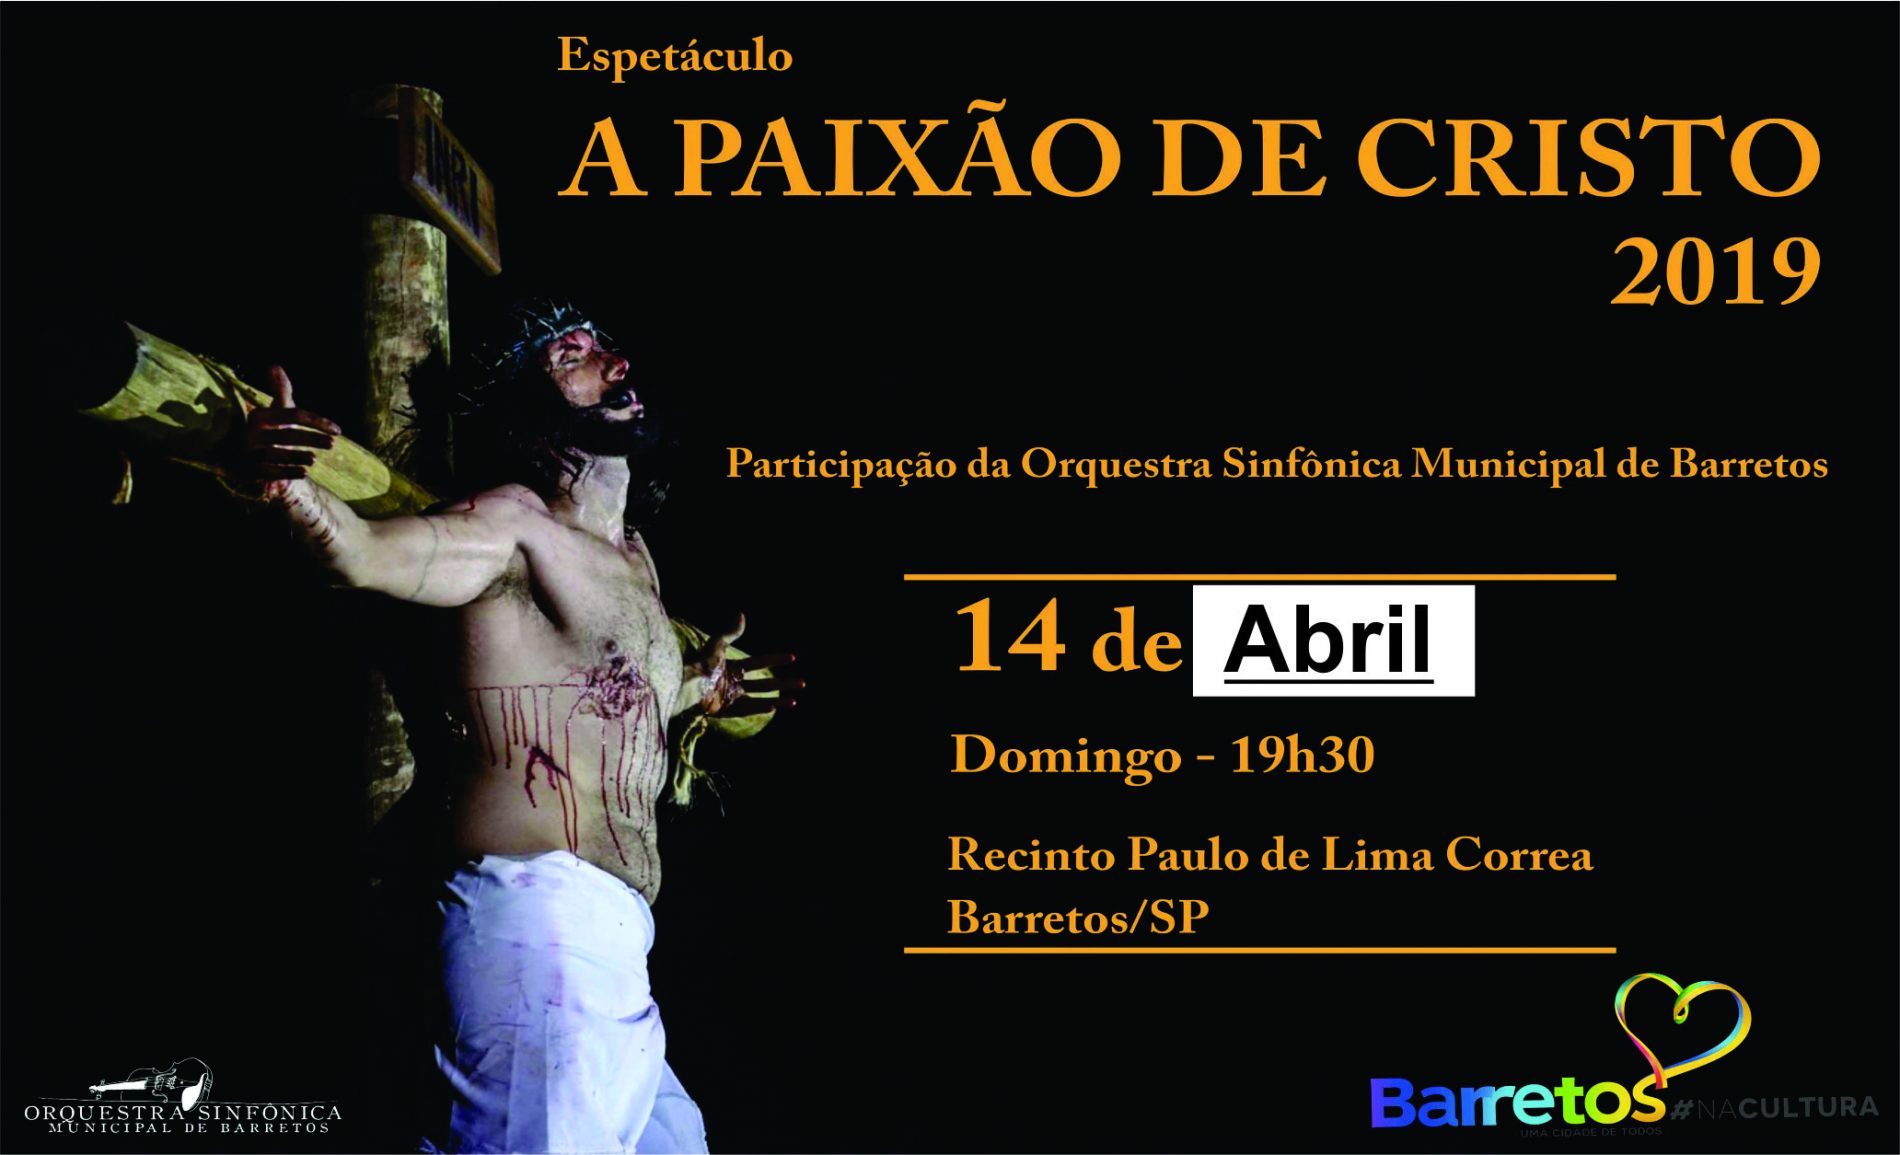 BARRETOS: ESPETÁCULO – A Paixão de Cristo confirmado para o dia 14 de abril no Recinto Paulo de Lima Corrêa